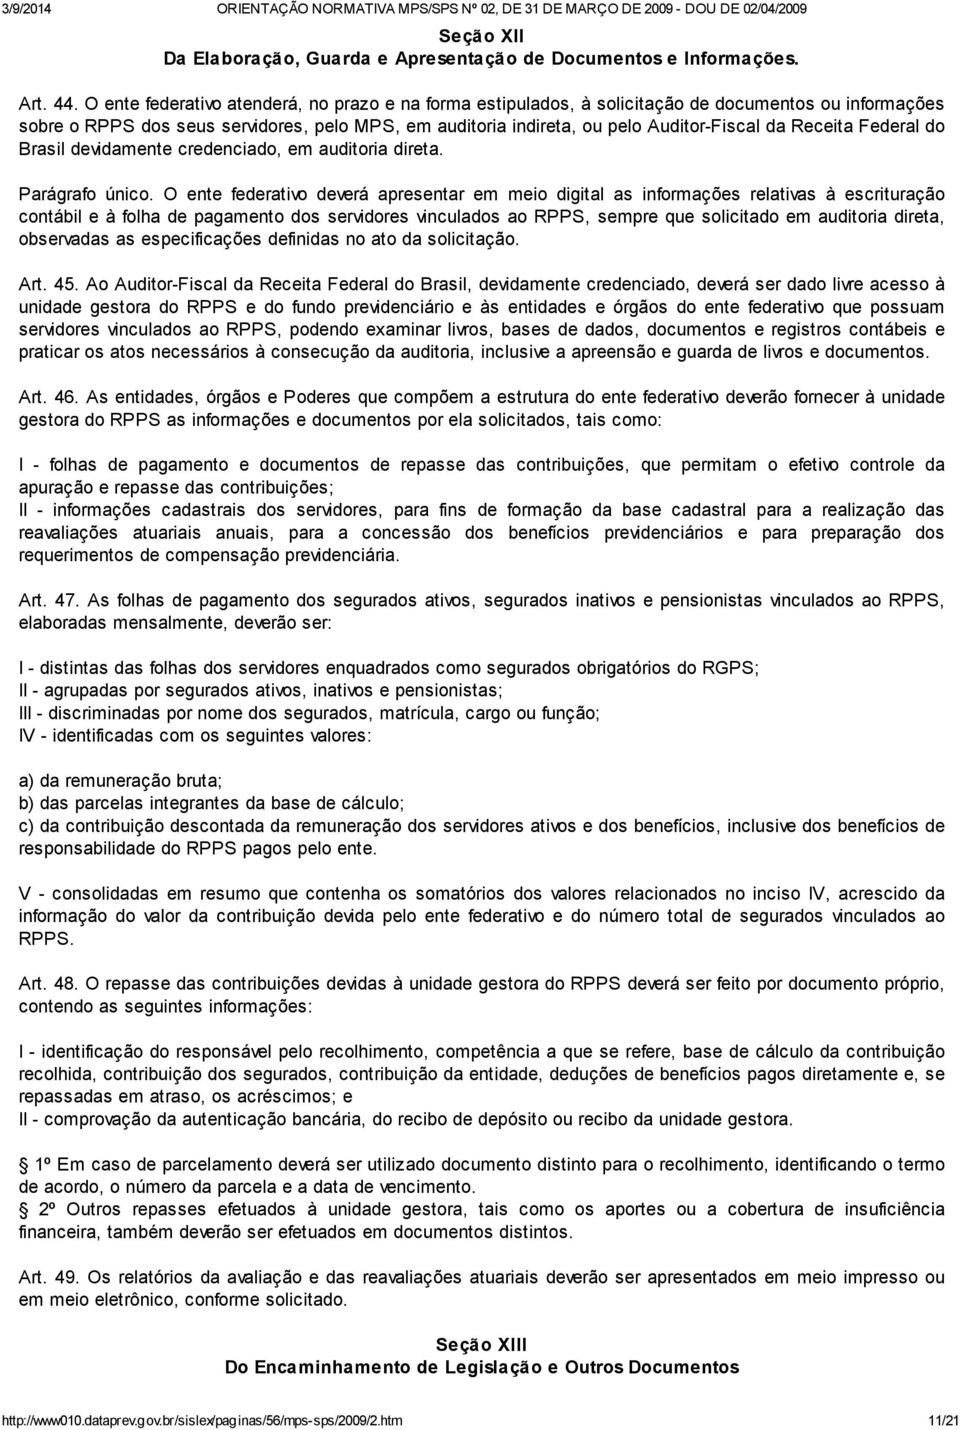 Receita Federal do Brasil devidamente credenciado, em auditoria direta. Parágrafo único.